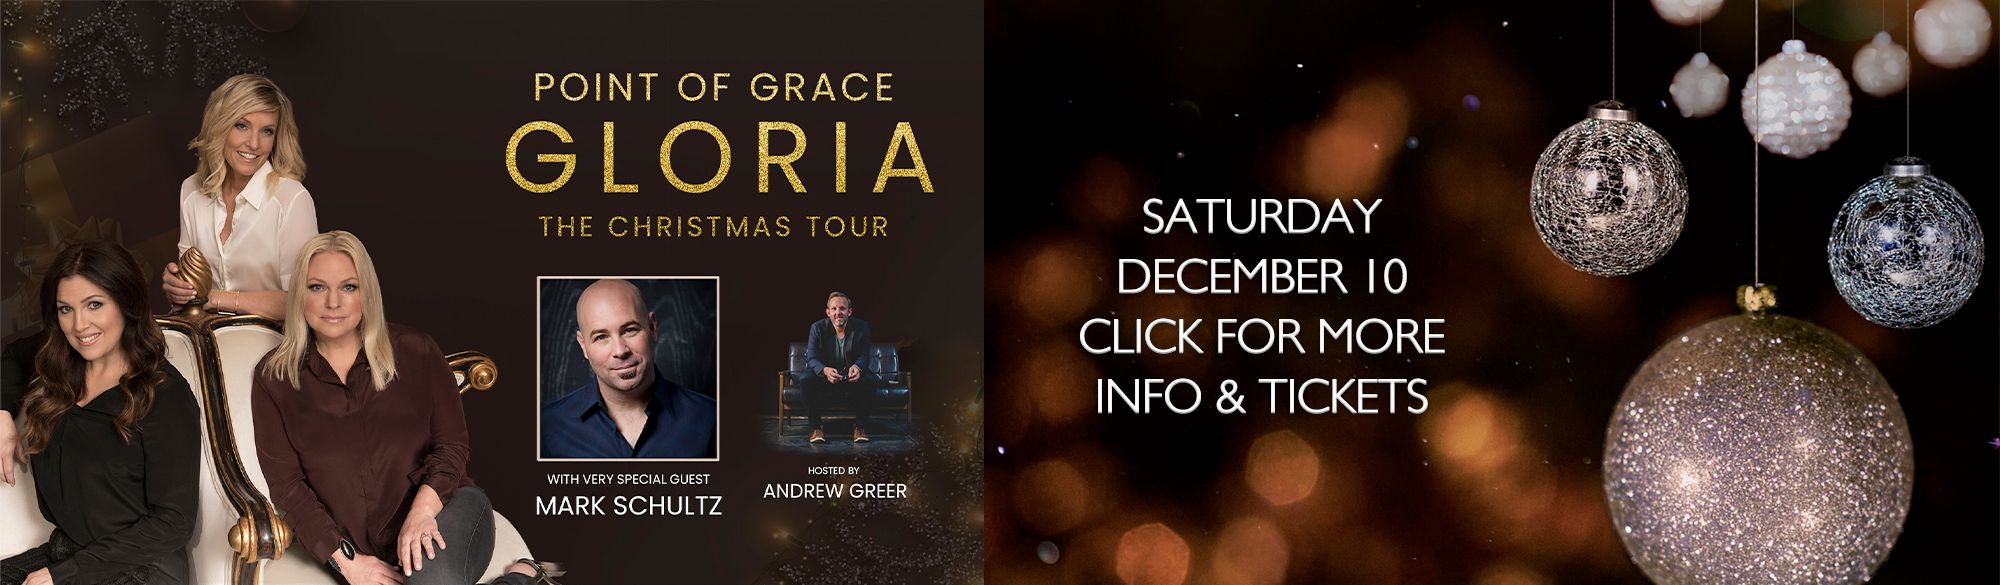 Point of Grace Gloria Tour